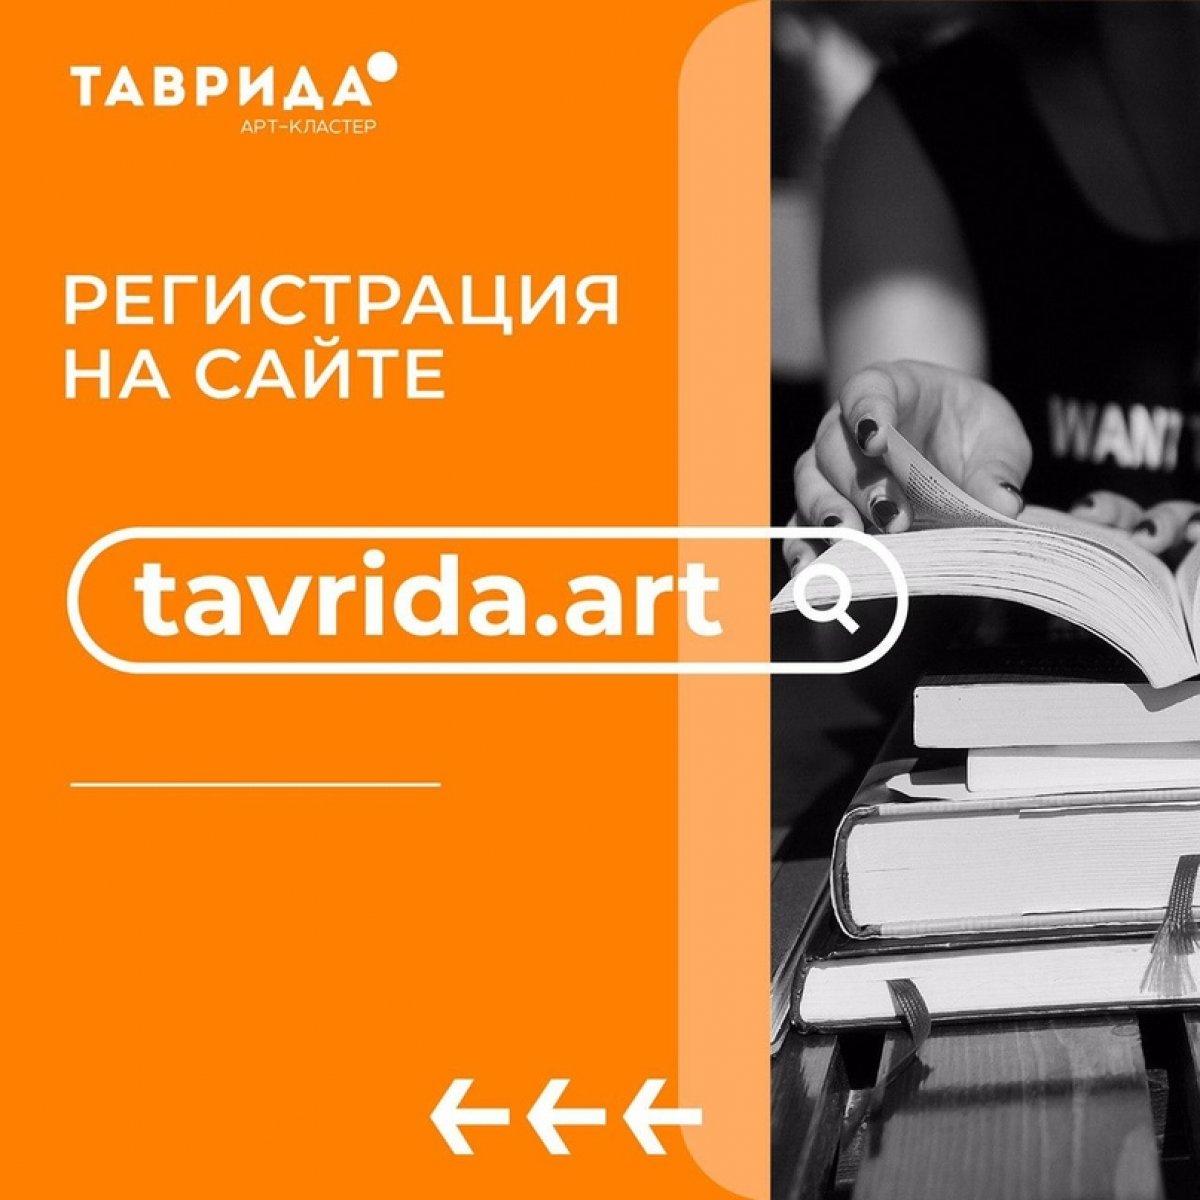 Студентов ТГПУ им. Л.Н. Толстого приглашают принять участие в творческой антишколе литературы и медиа на форуме Таврида🌊